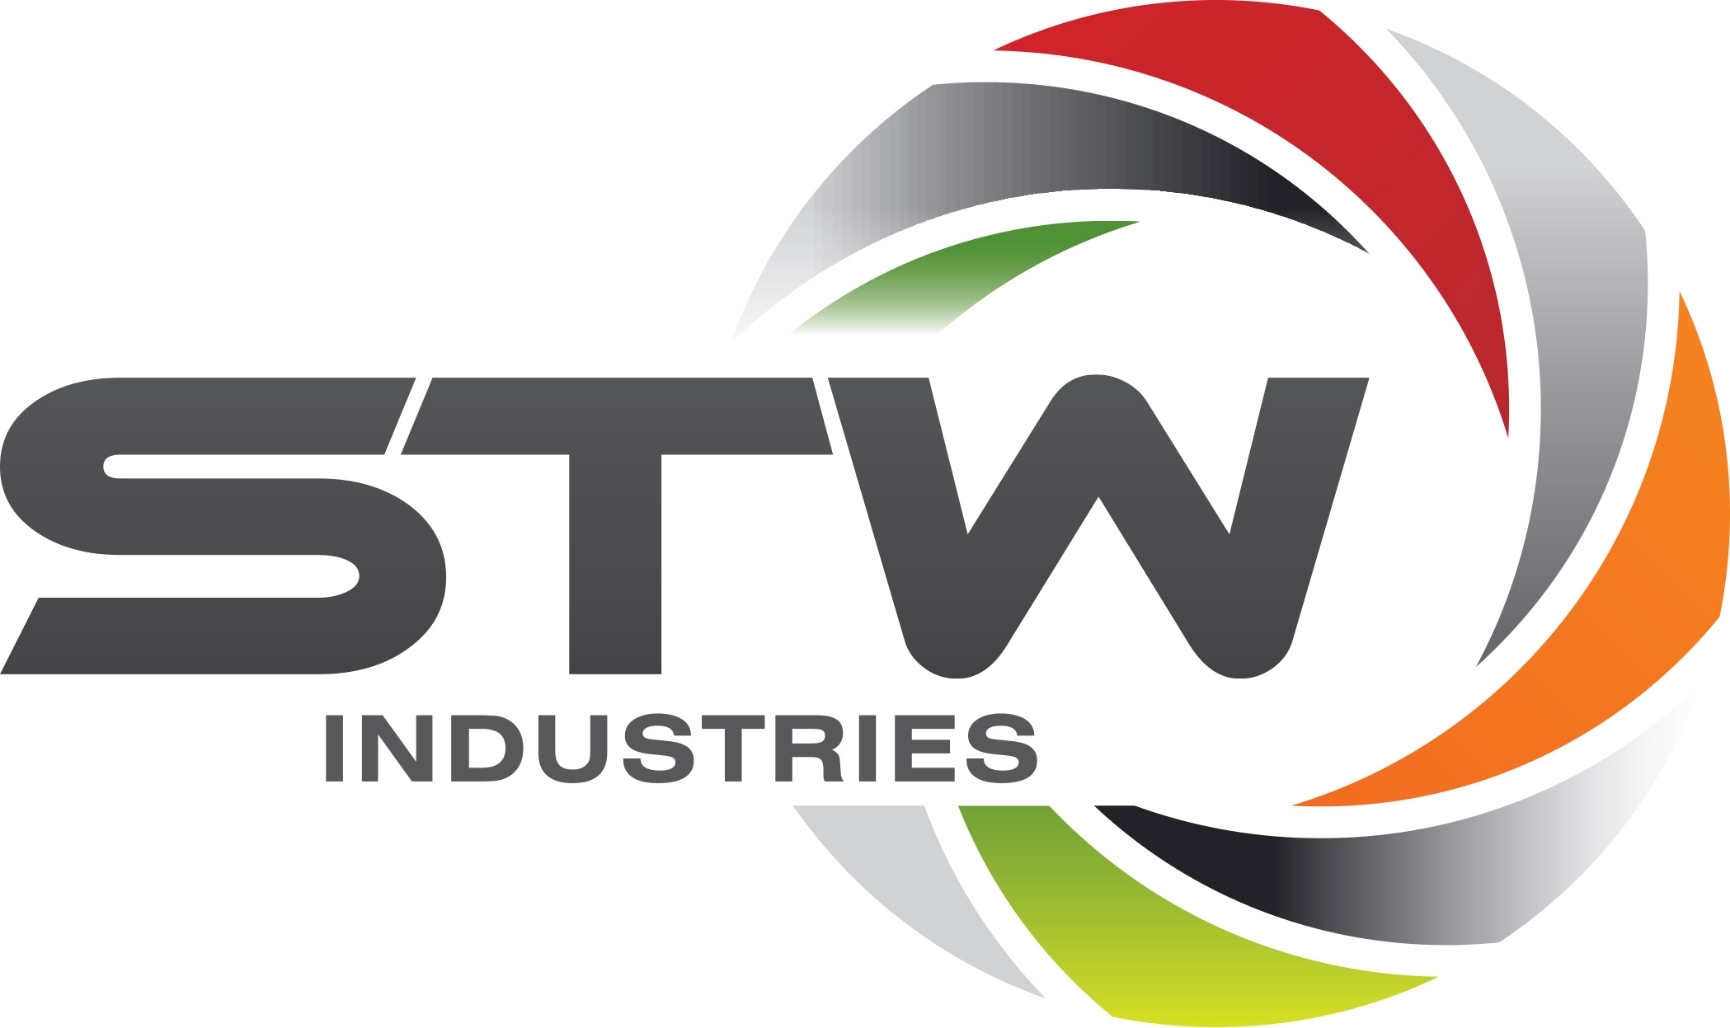 STW Industries